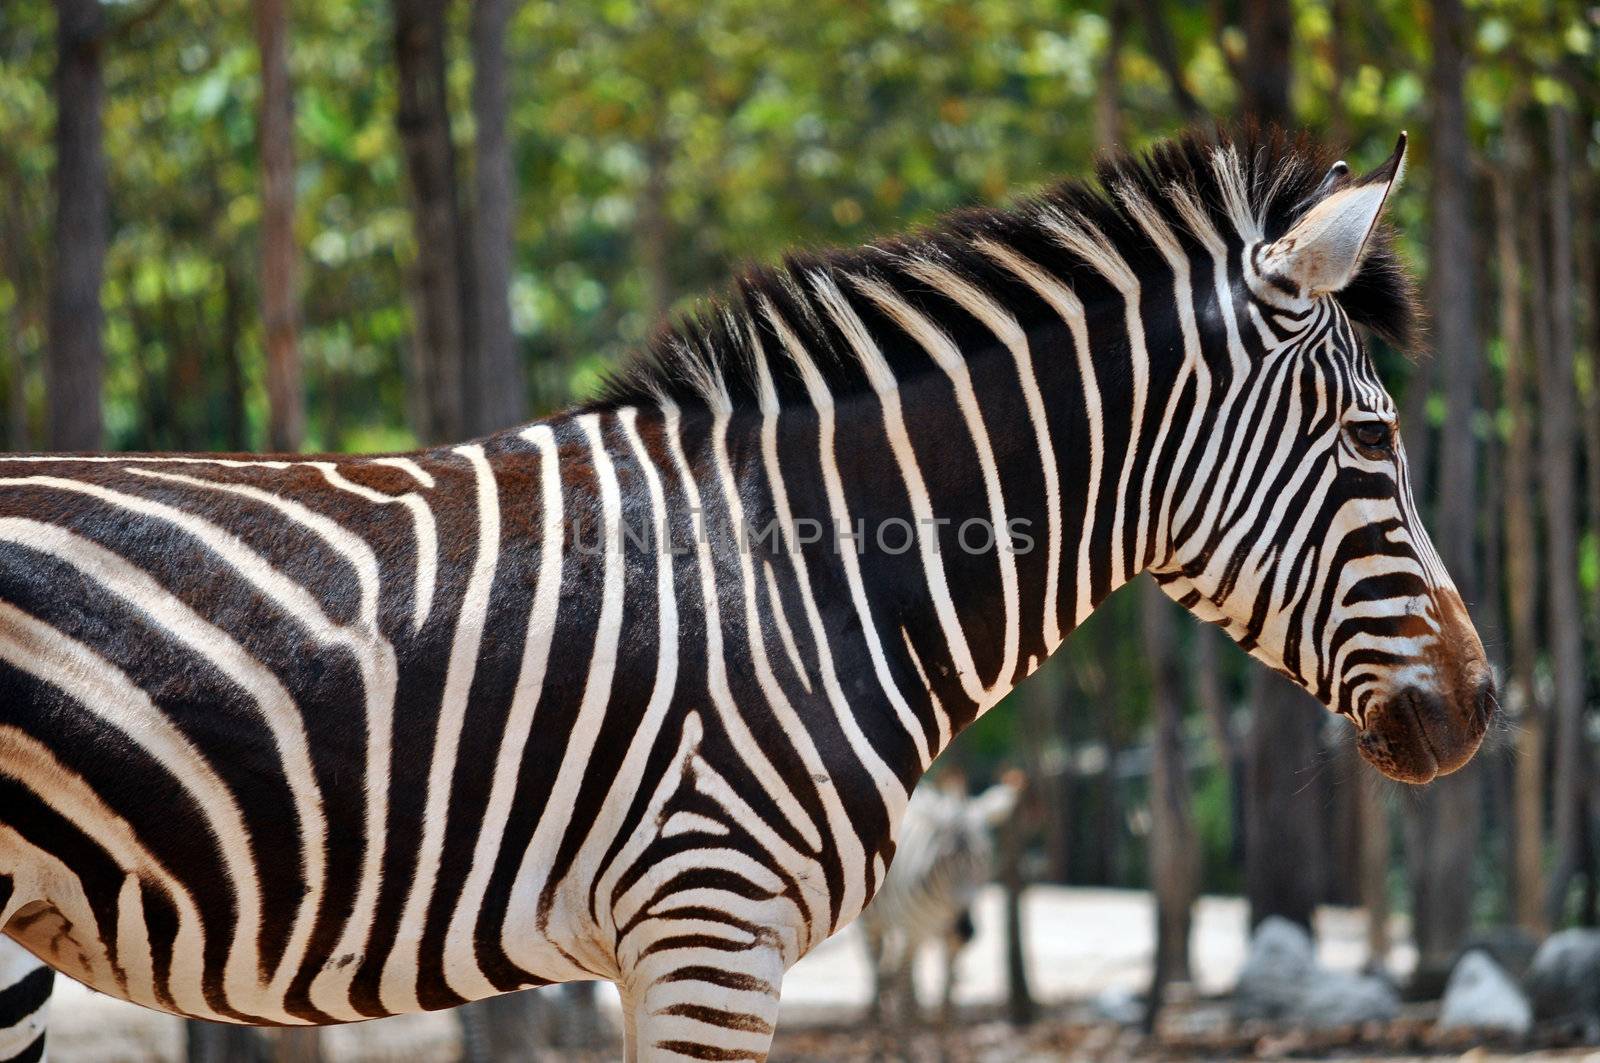 zebra by MaZiKab